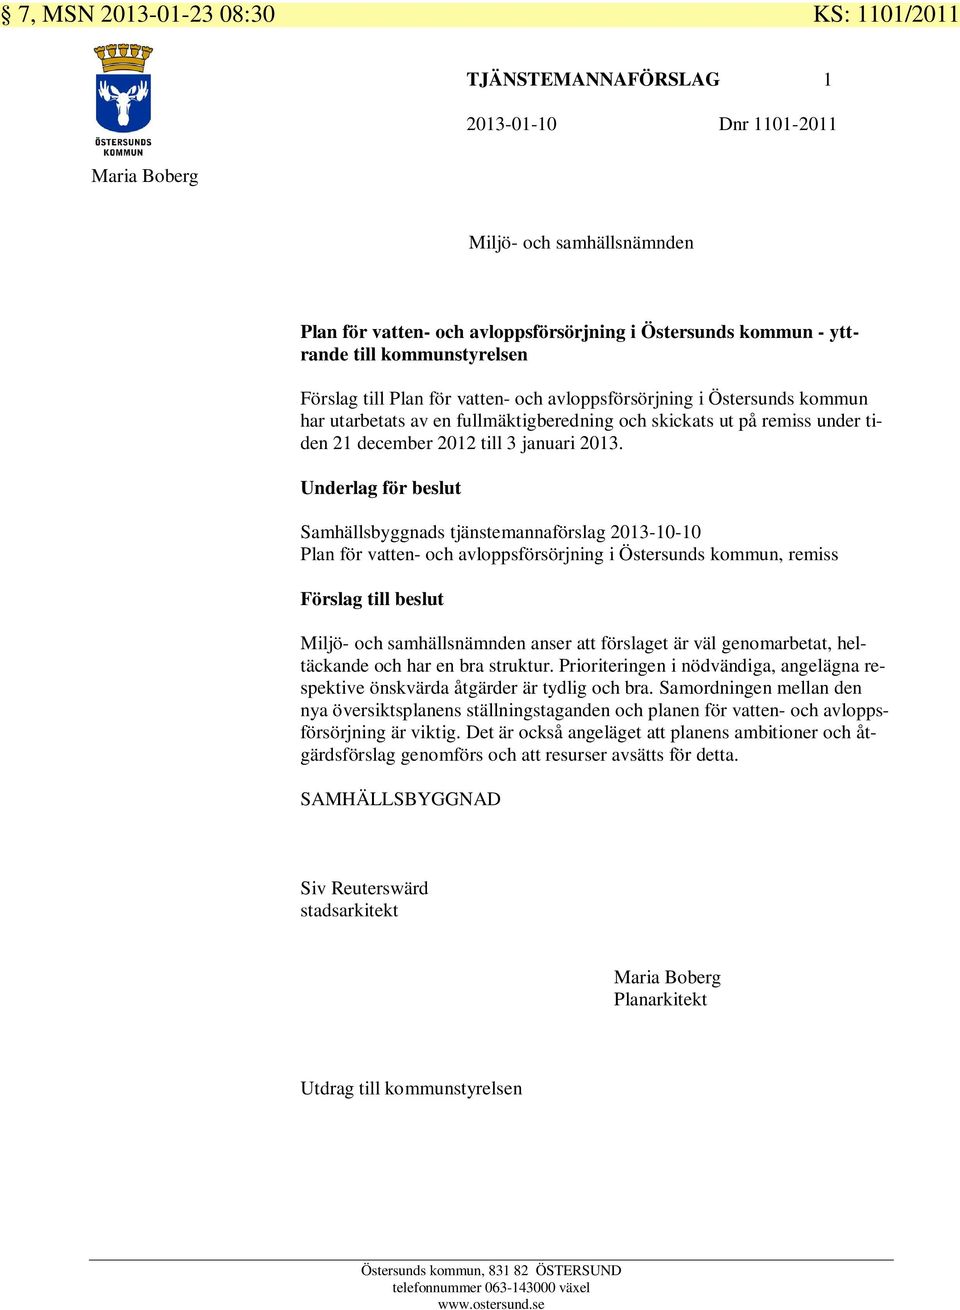 Underlag för beslut Samhällsbyggnads tjänstemannaförslag 2013-10-10 Plan för vatten- och avloppsförsörjning i Östersunds kommun, remiss Förslag till beslut anser att förslaget är väl genomarbetat,